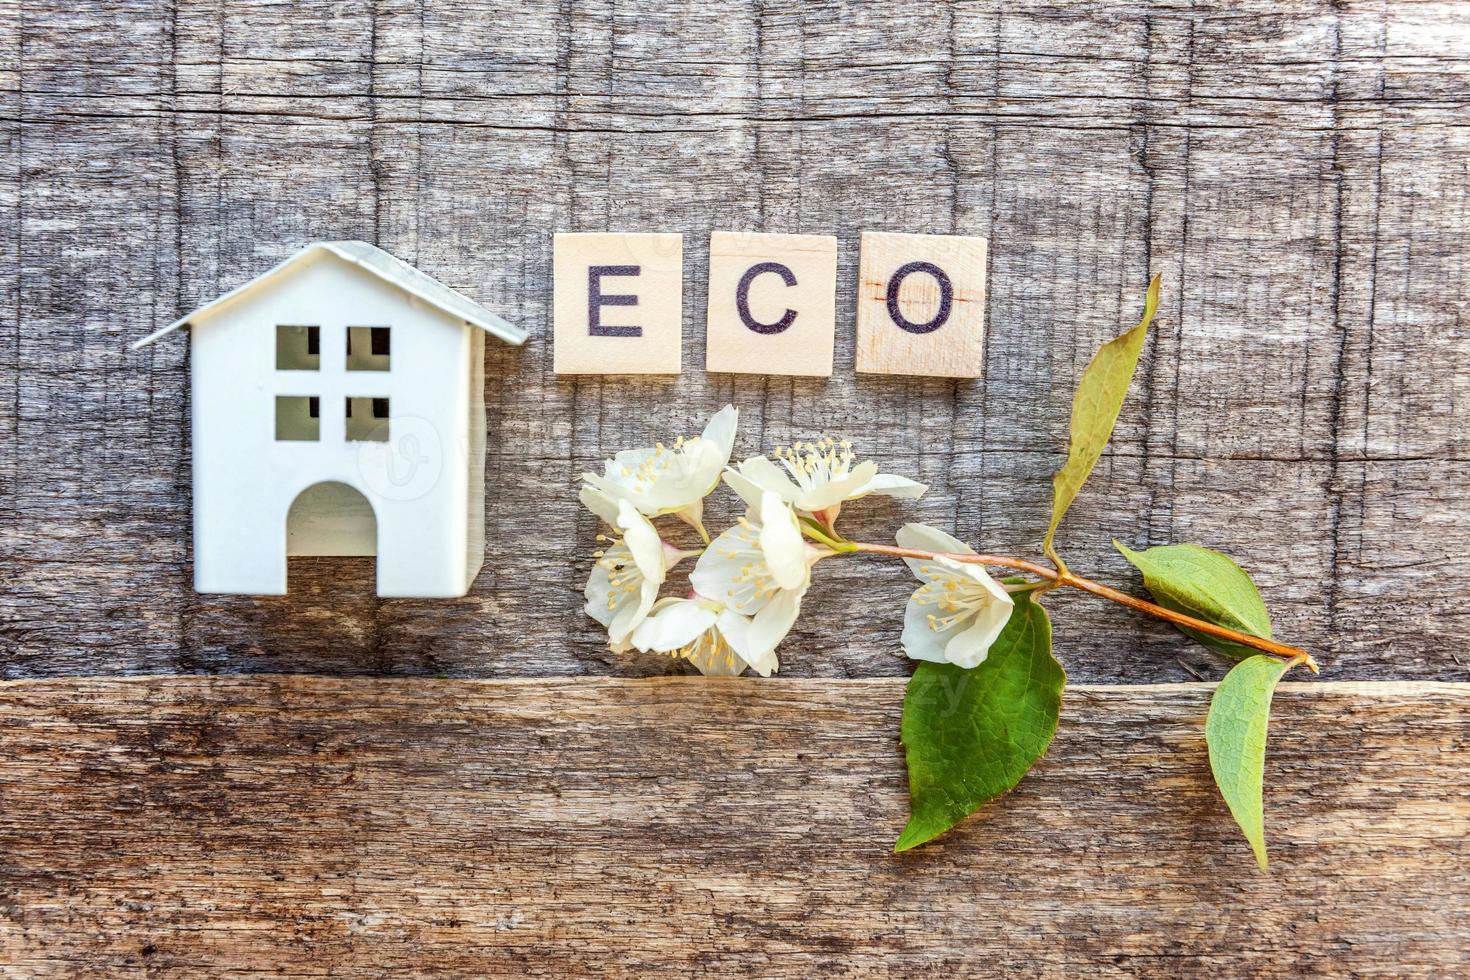 miniatuur speelgoed model huis met inscriptie eco letters woord op houten achtergrond foto